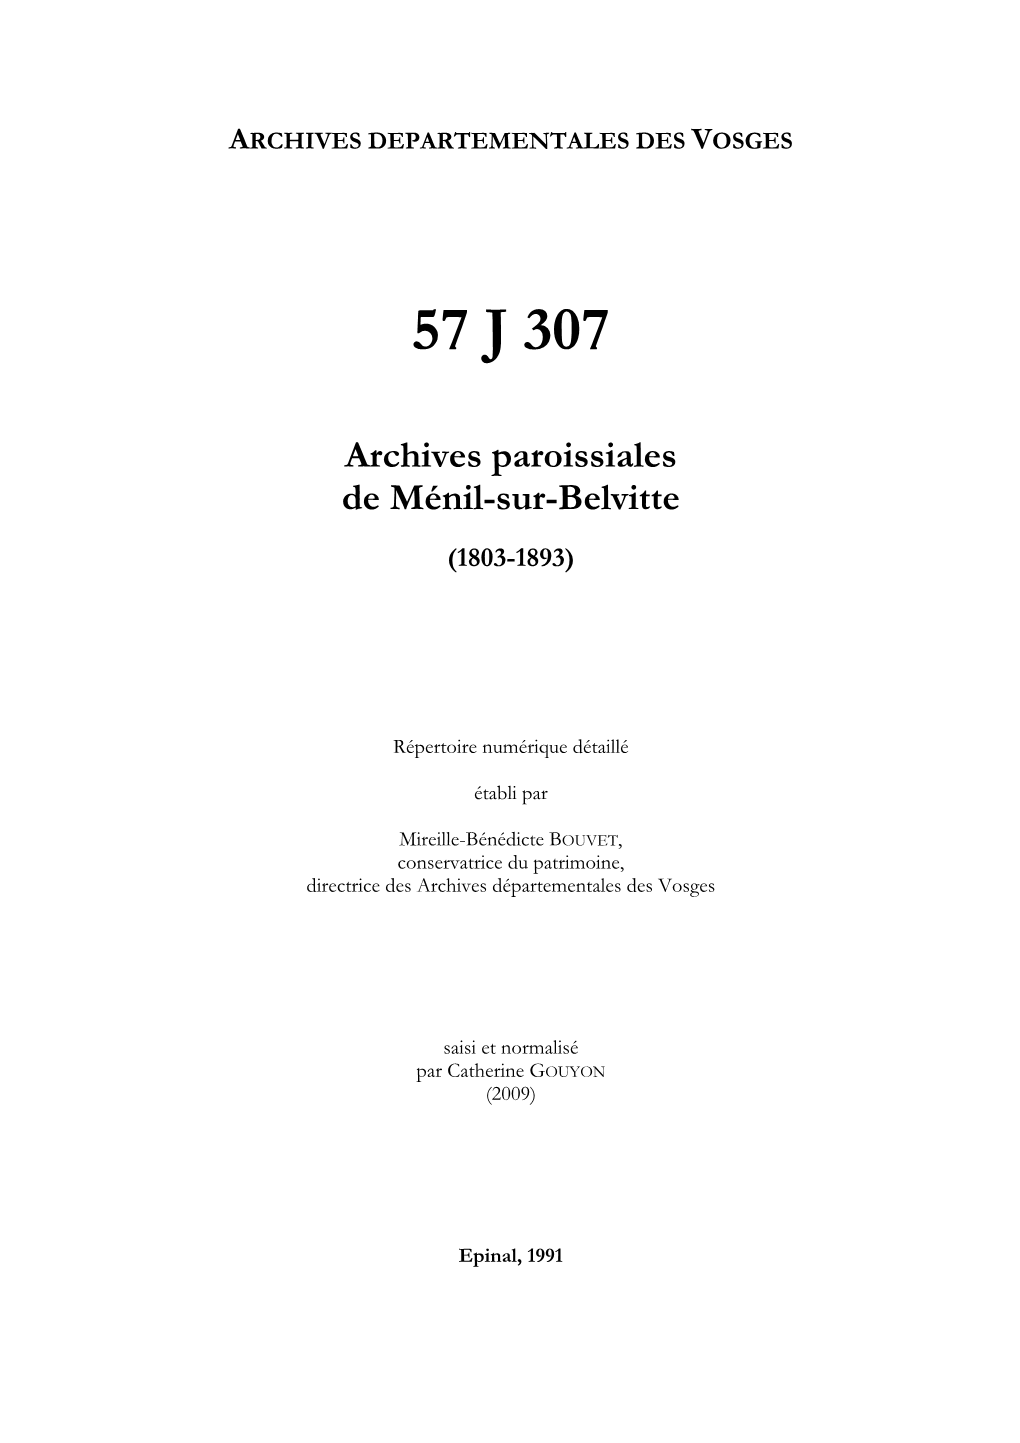 Archives De La Paroisse De Ménil-Sur-Belvitte.Pdf